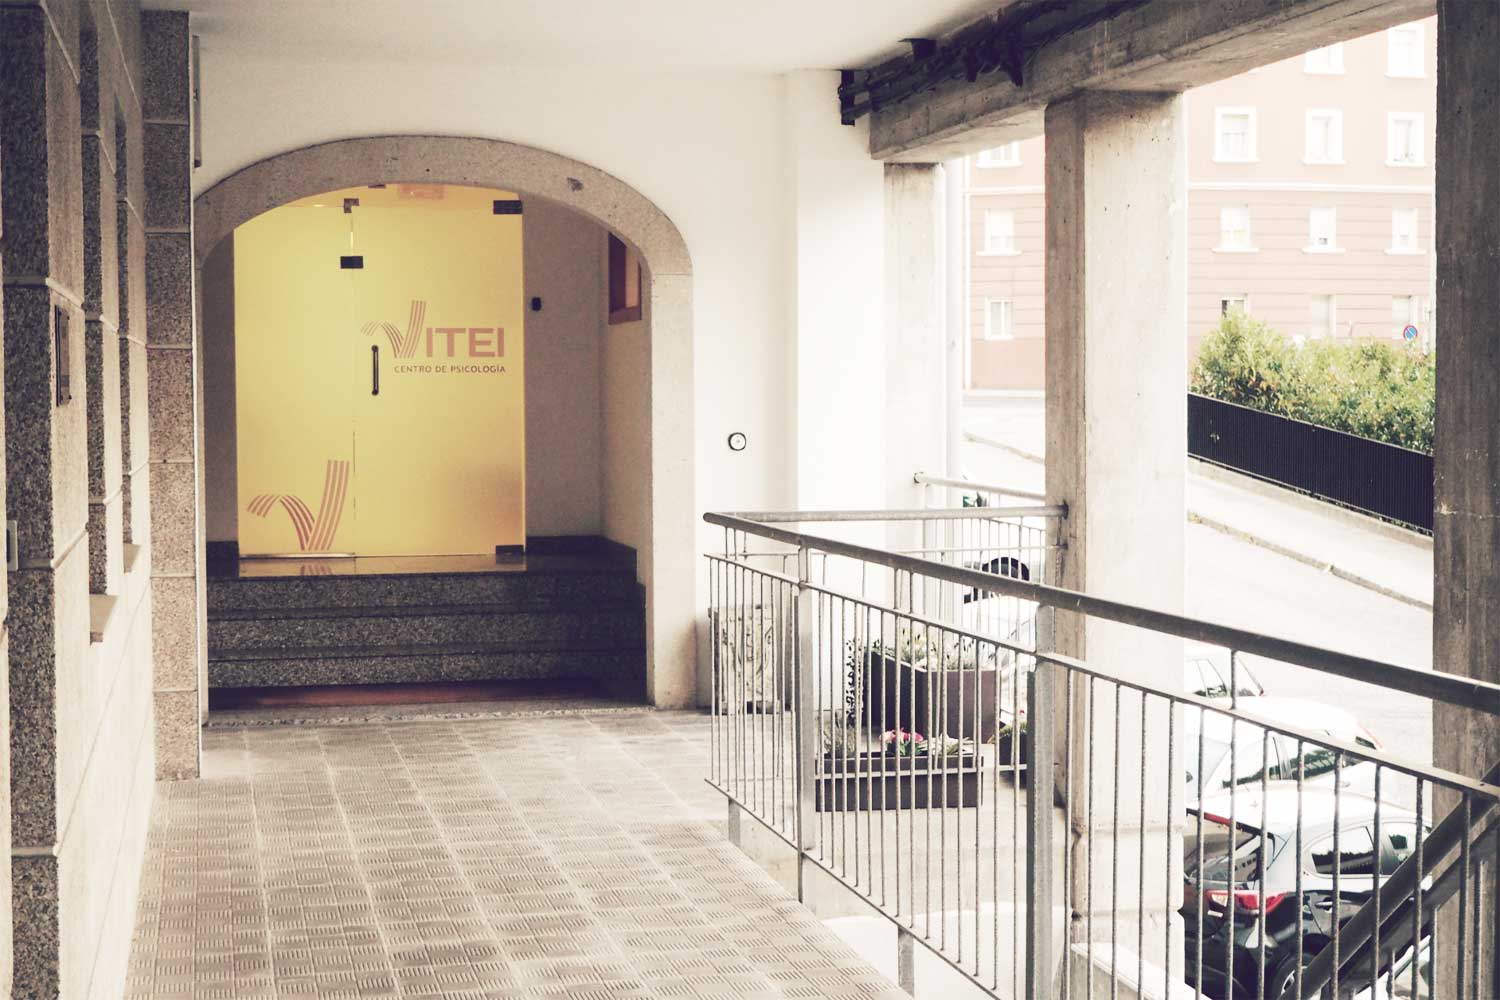 Instalaciones del centro de psicología VITEI en Ferrol